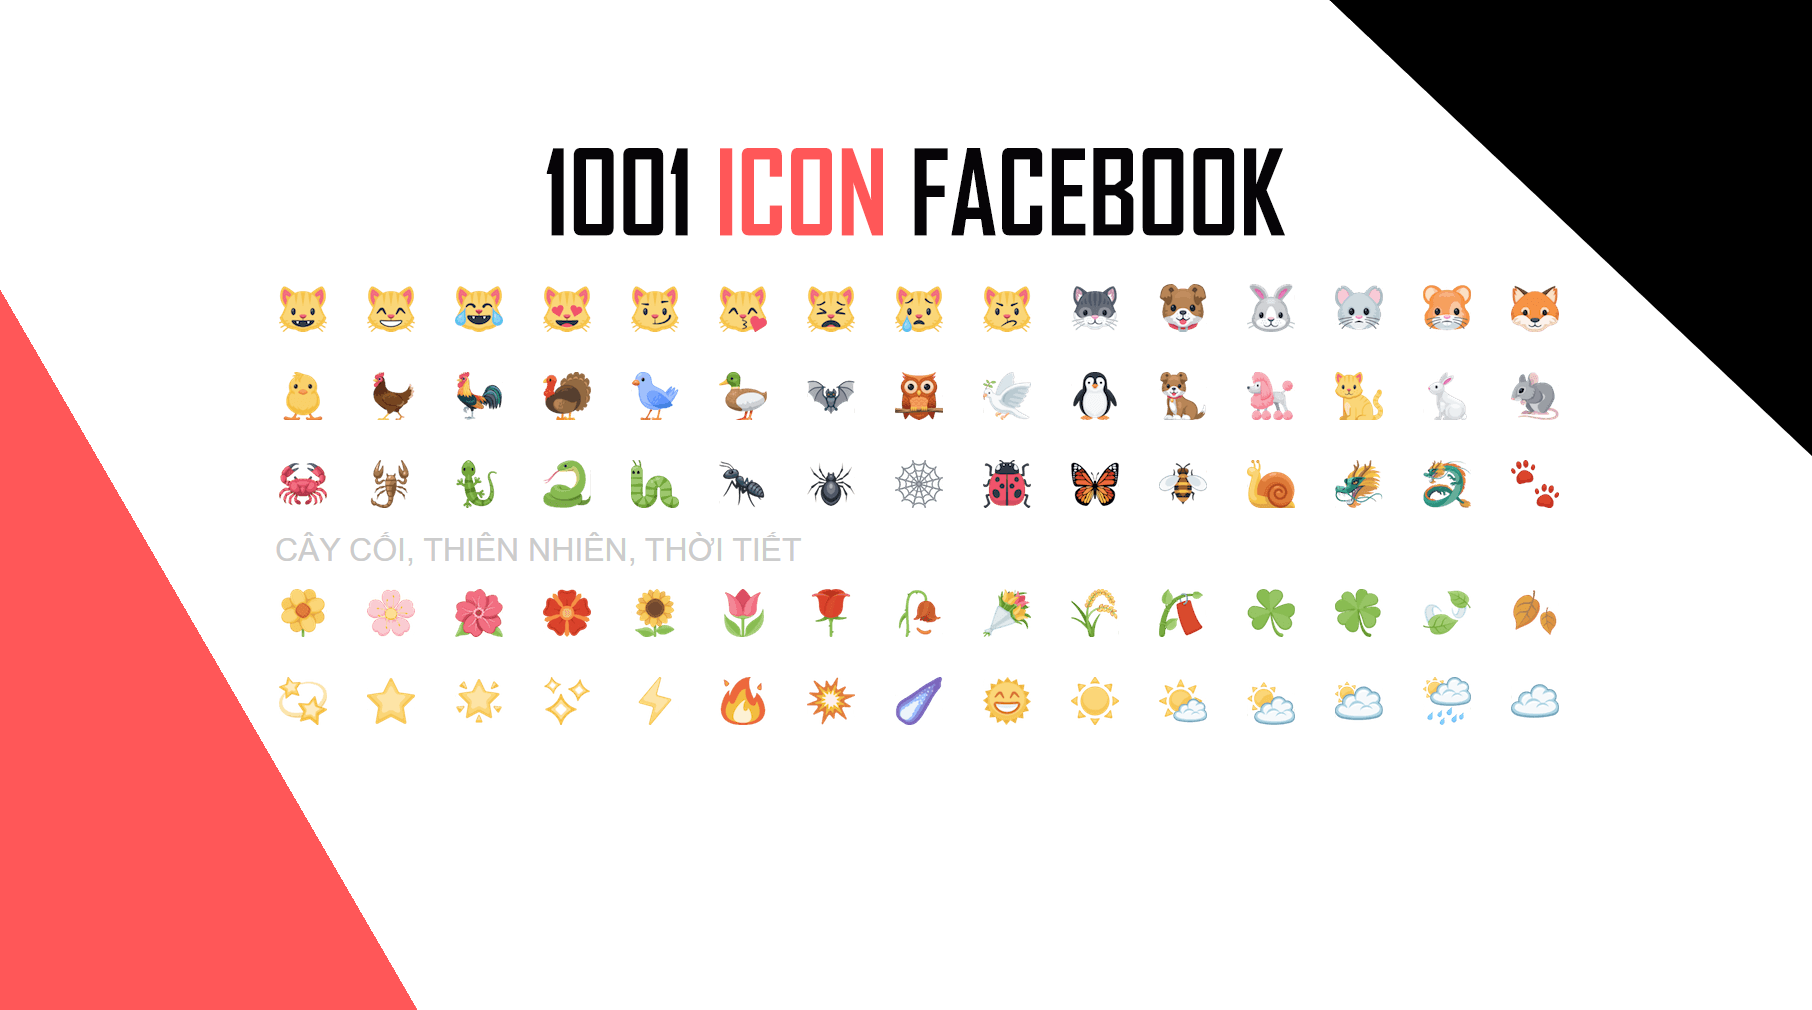 Full Trọn Bộ 1001 Icon Facebook 2021 Mới Nhất 😃 - Biểu Tượng Cảm Xúc  Facebook Emoji